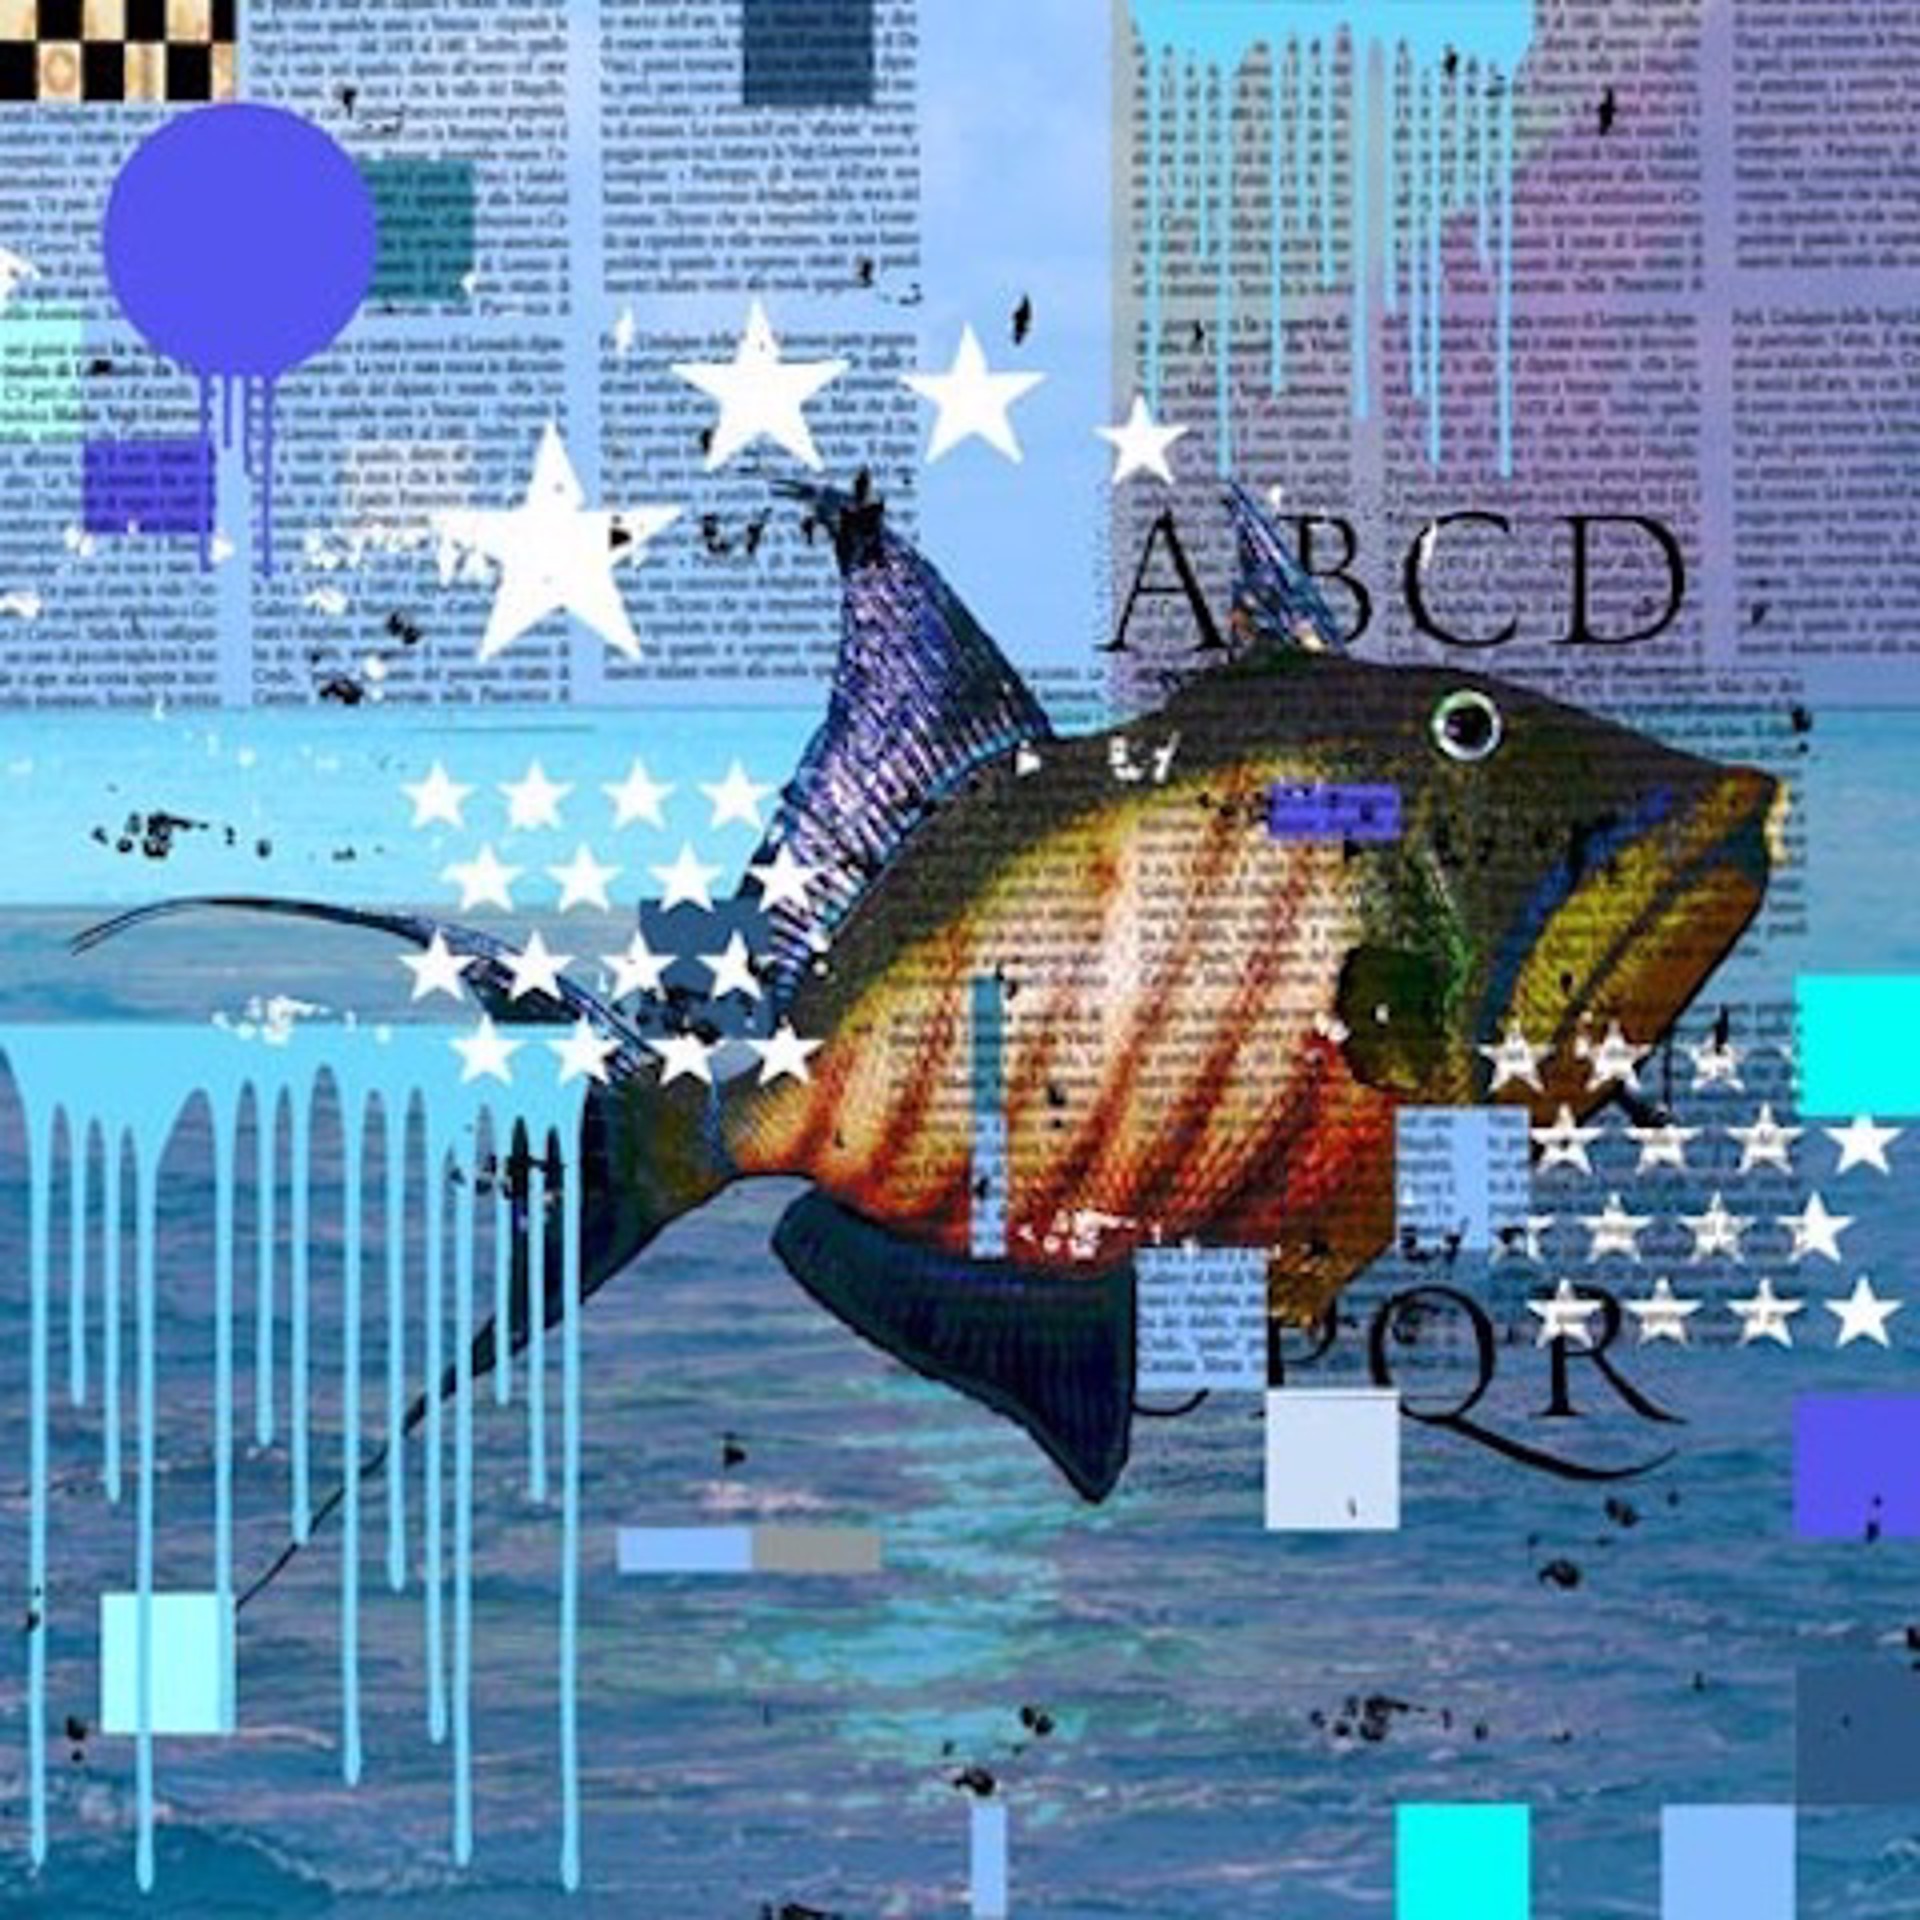 Queen Trigger Fish by Mark Andrew Allen